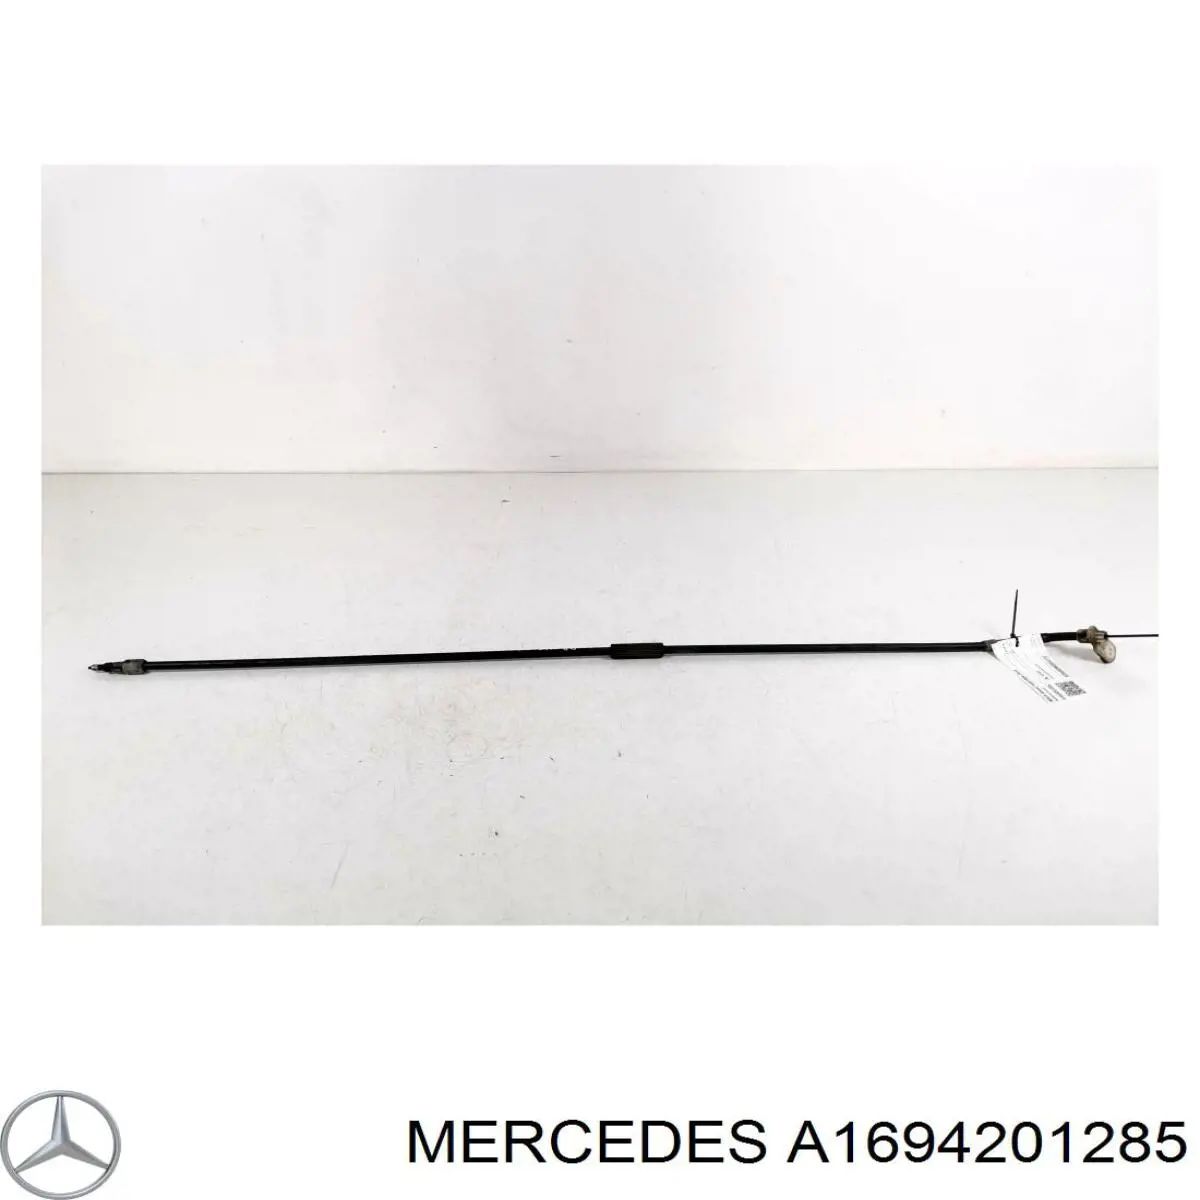 A1694201285 Mercedes трос ручного тормоза задний правый